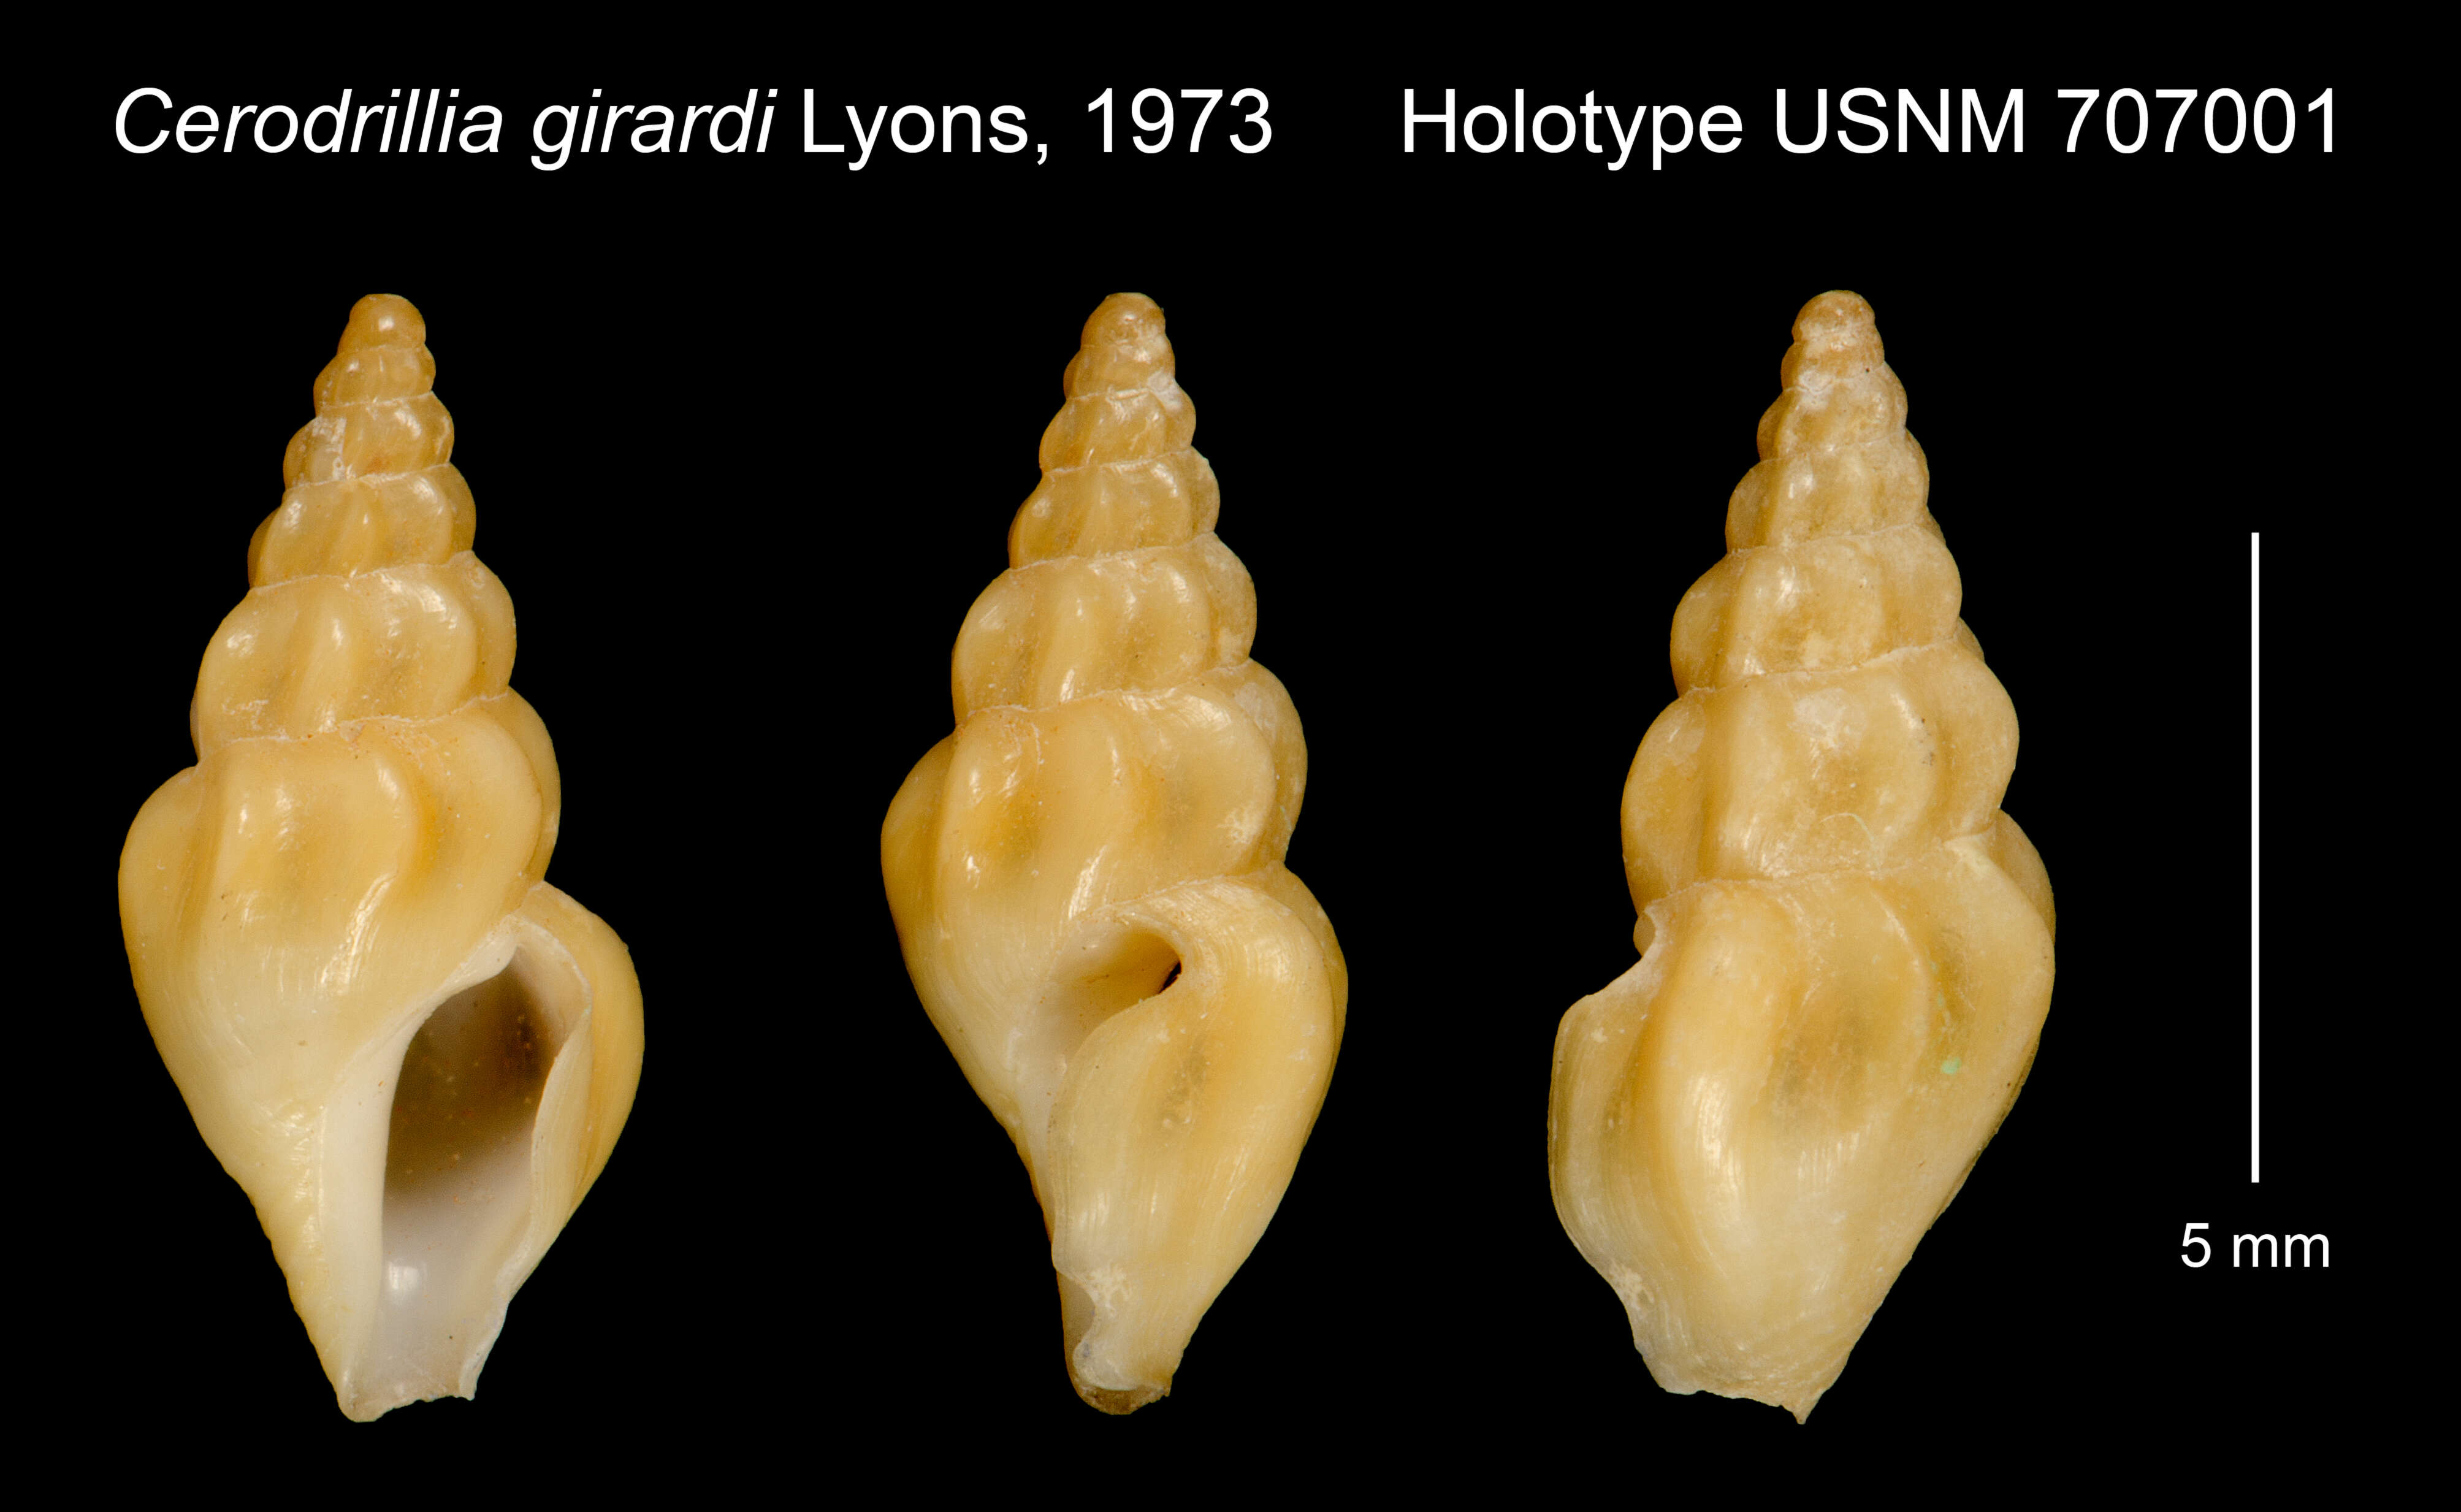 Image of Cerodrillia girardi Lyons 1972